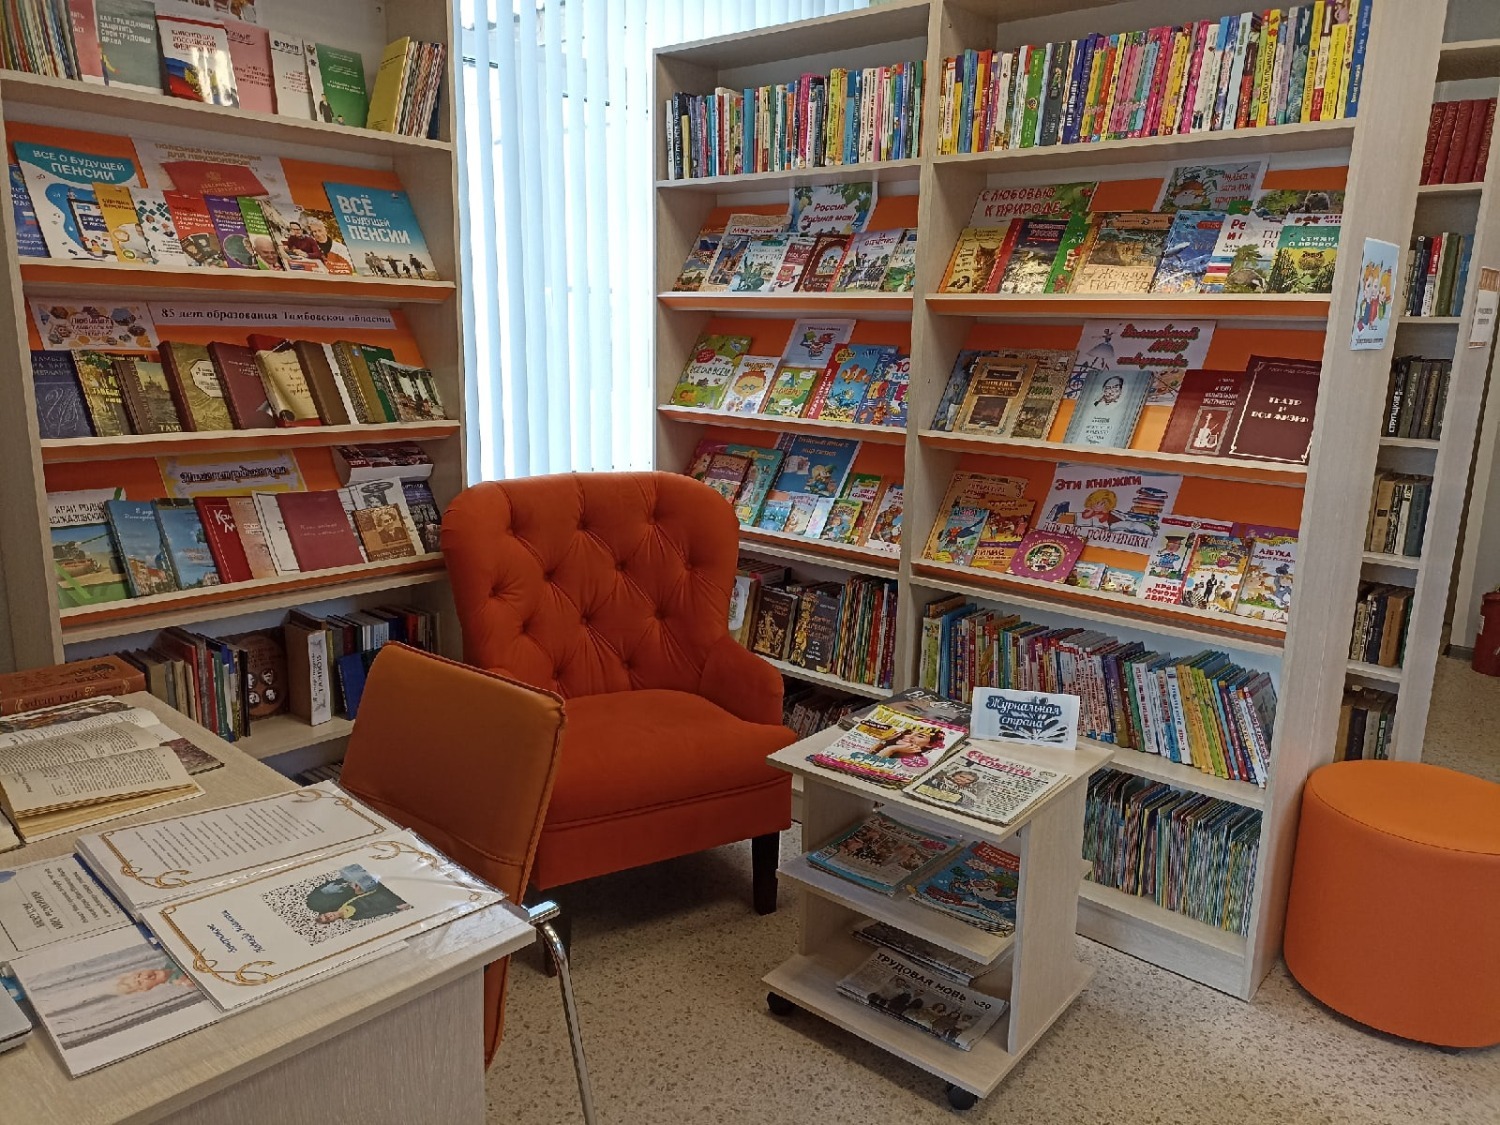 Library update. Обновление библиотеки. Обновилась библиотека в городе Коле.